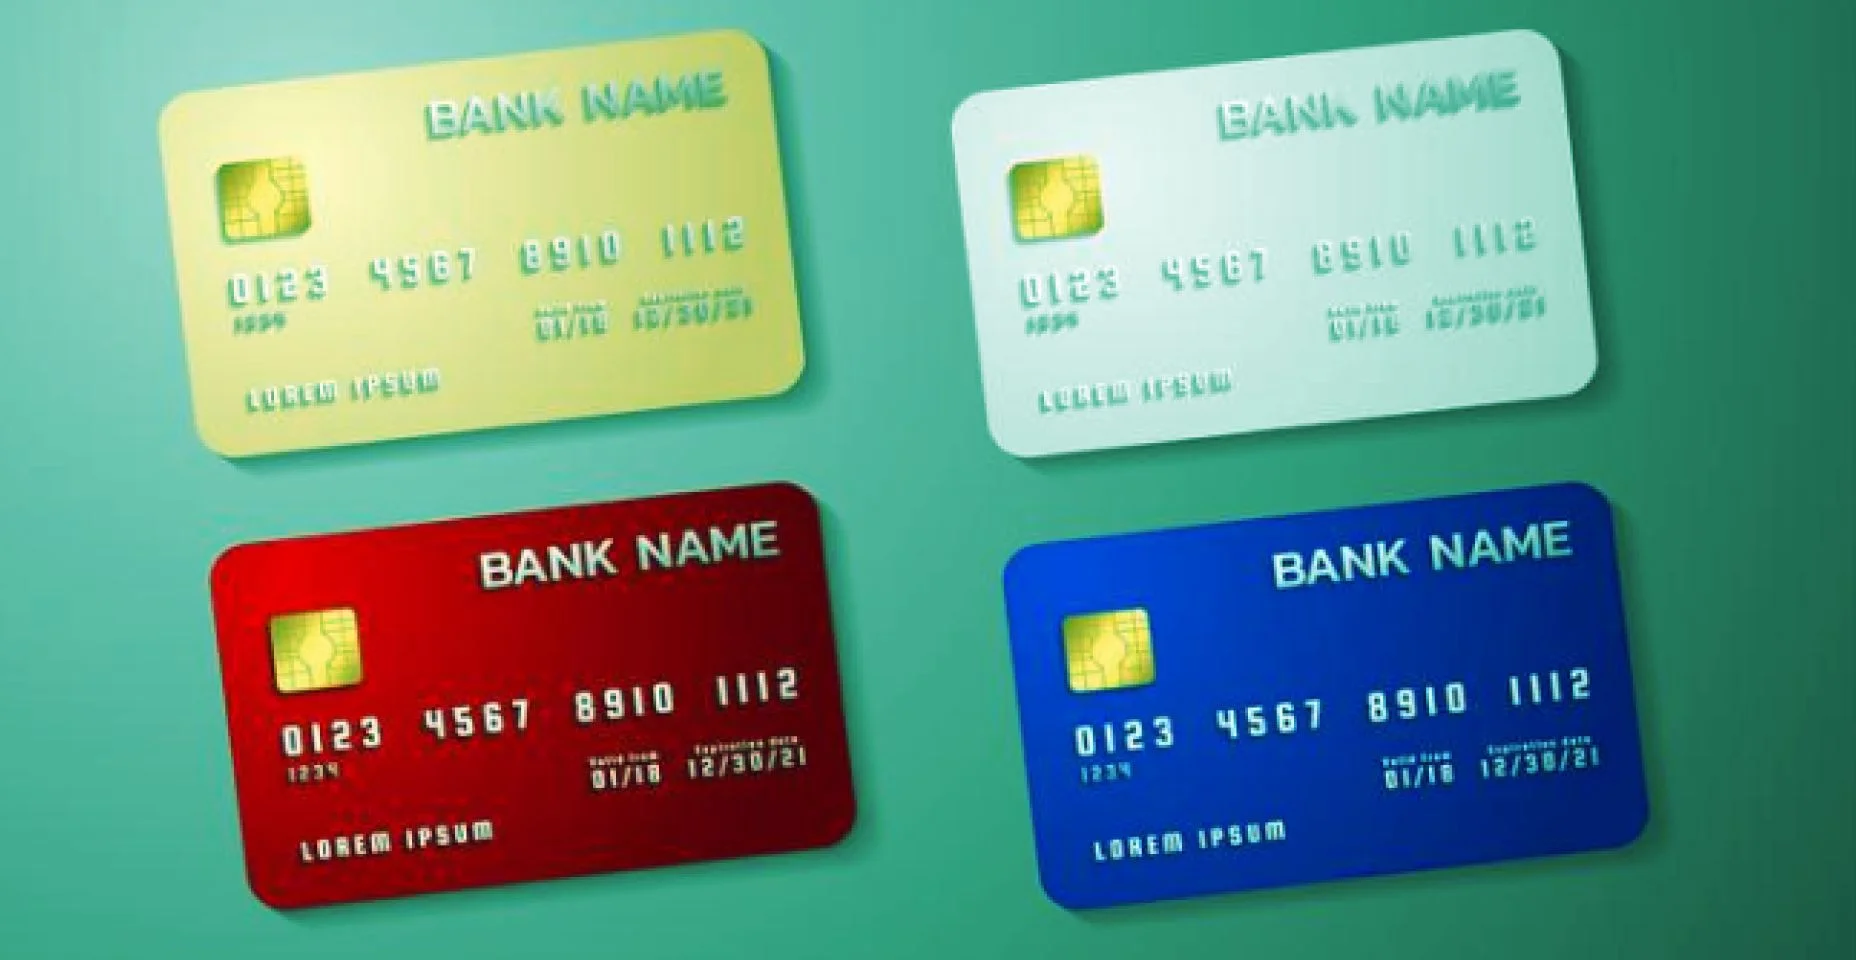 Cartões de crédito juntos para ilustrar o artigo aonde explica todo os seus números e informações